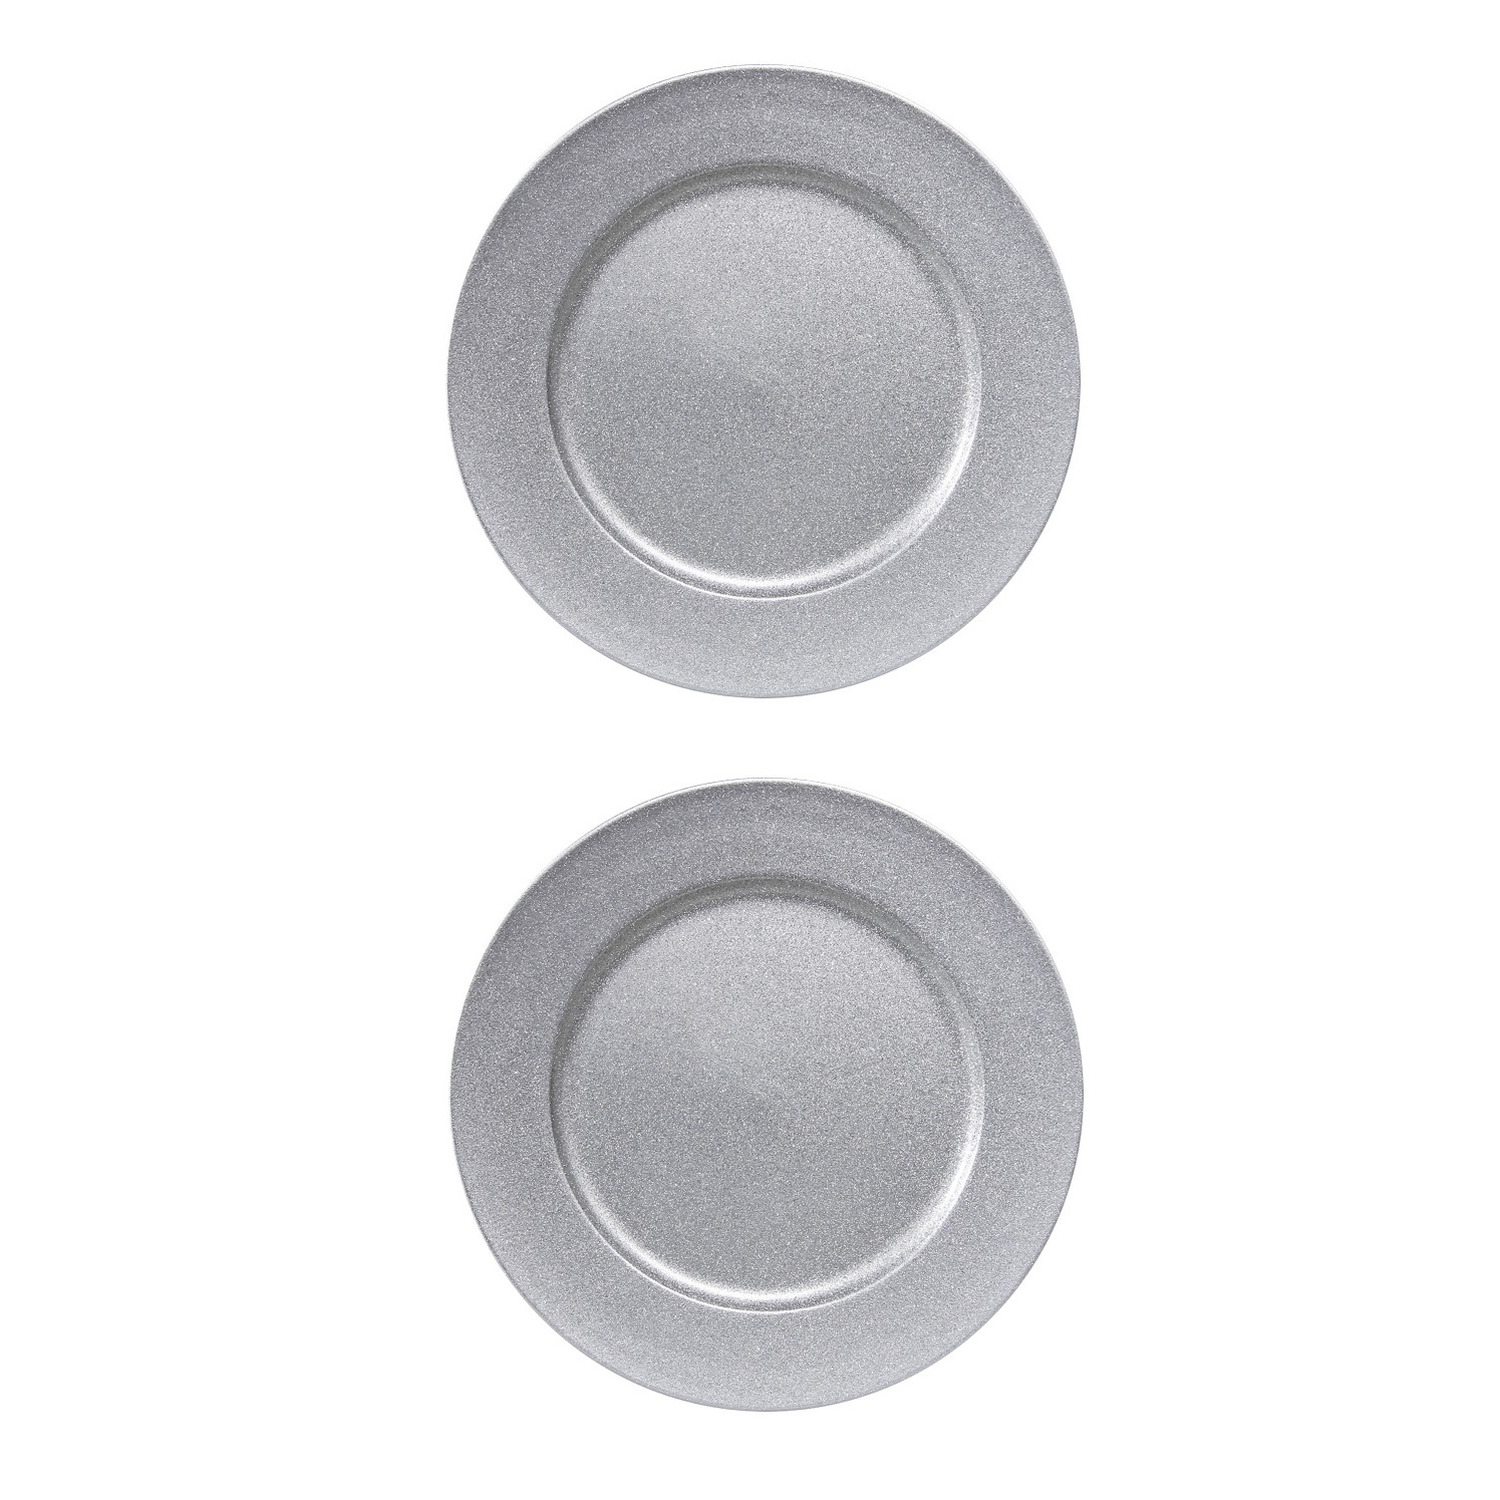 2x stuks diner borden-onderborden zilver met glitters 33 cm